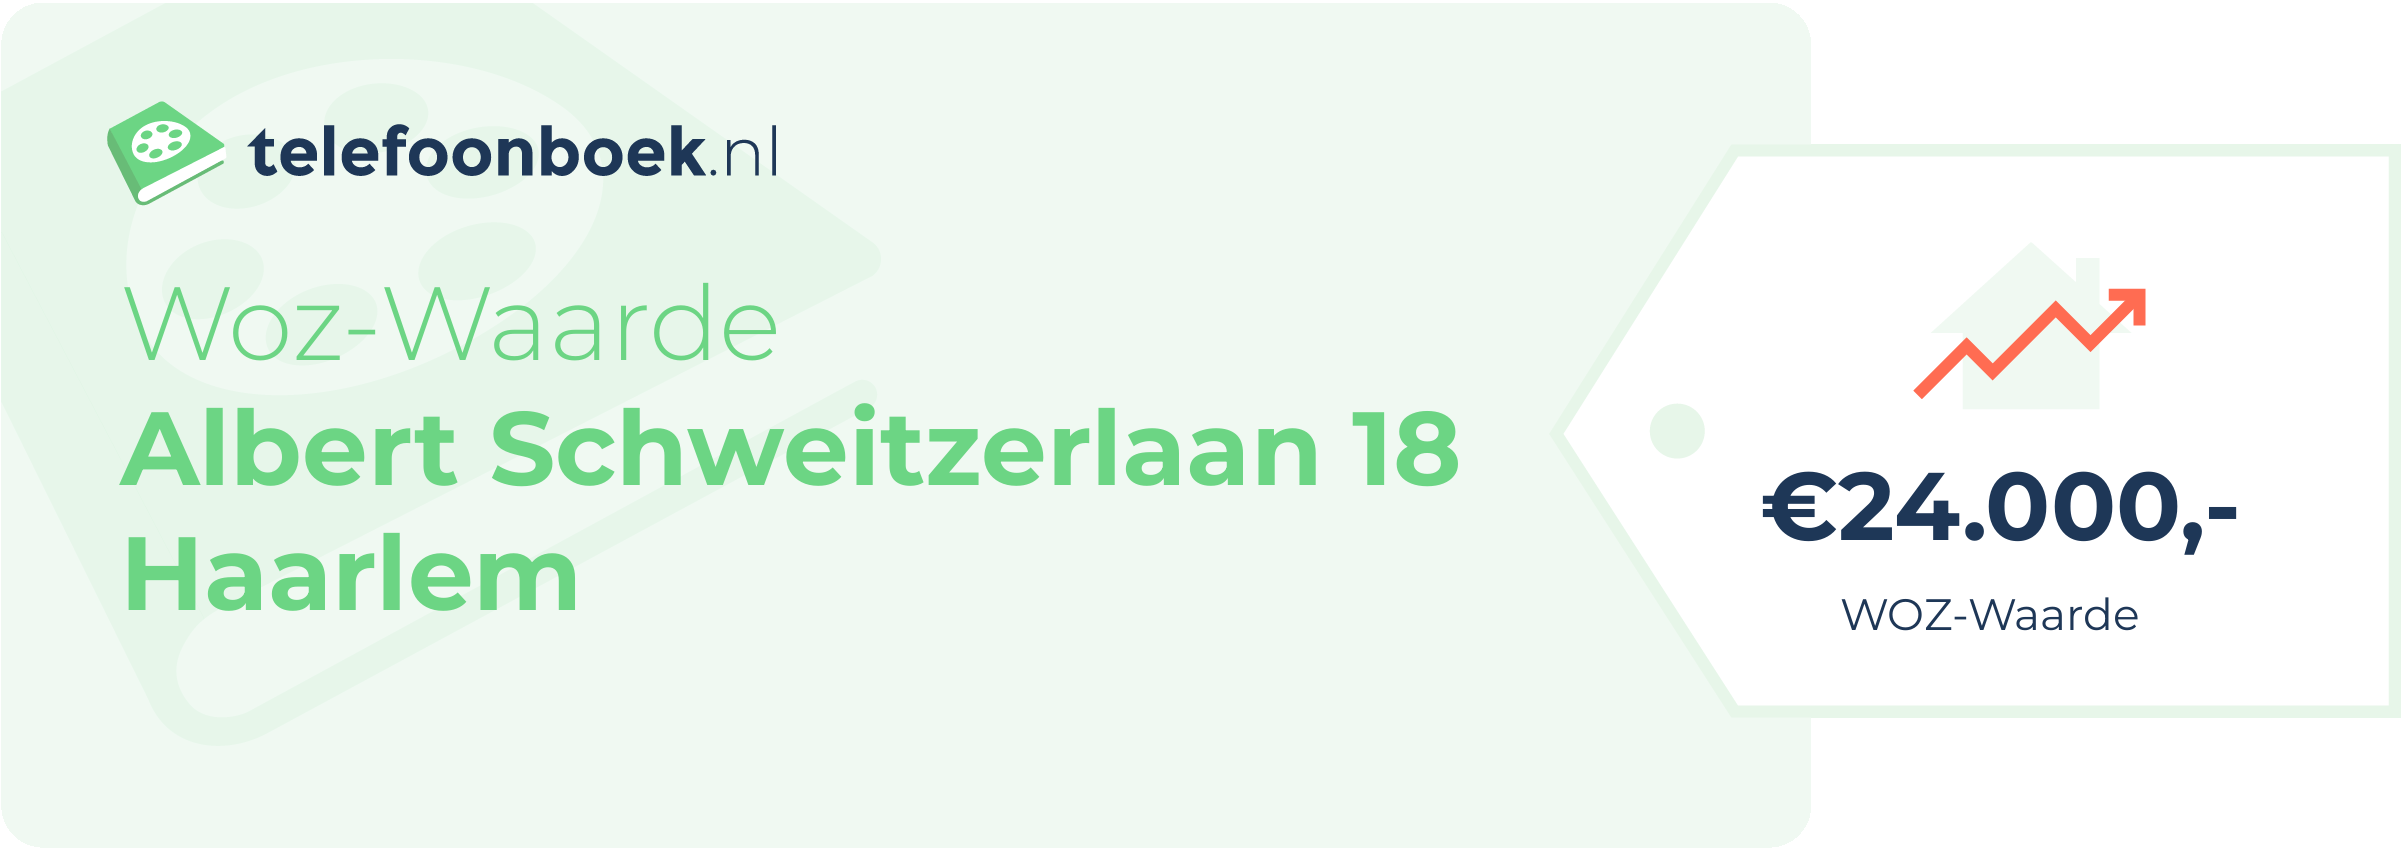 WOZ-waarde Albert Schweitzerlaan 18 Haarlem